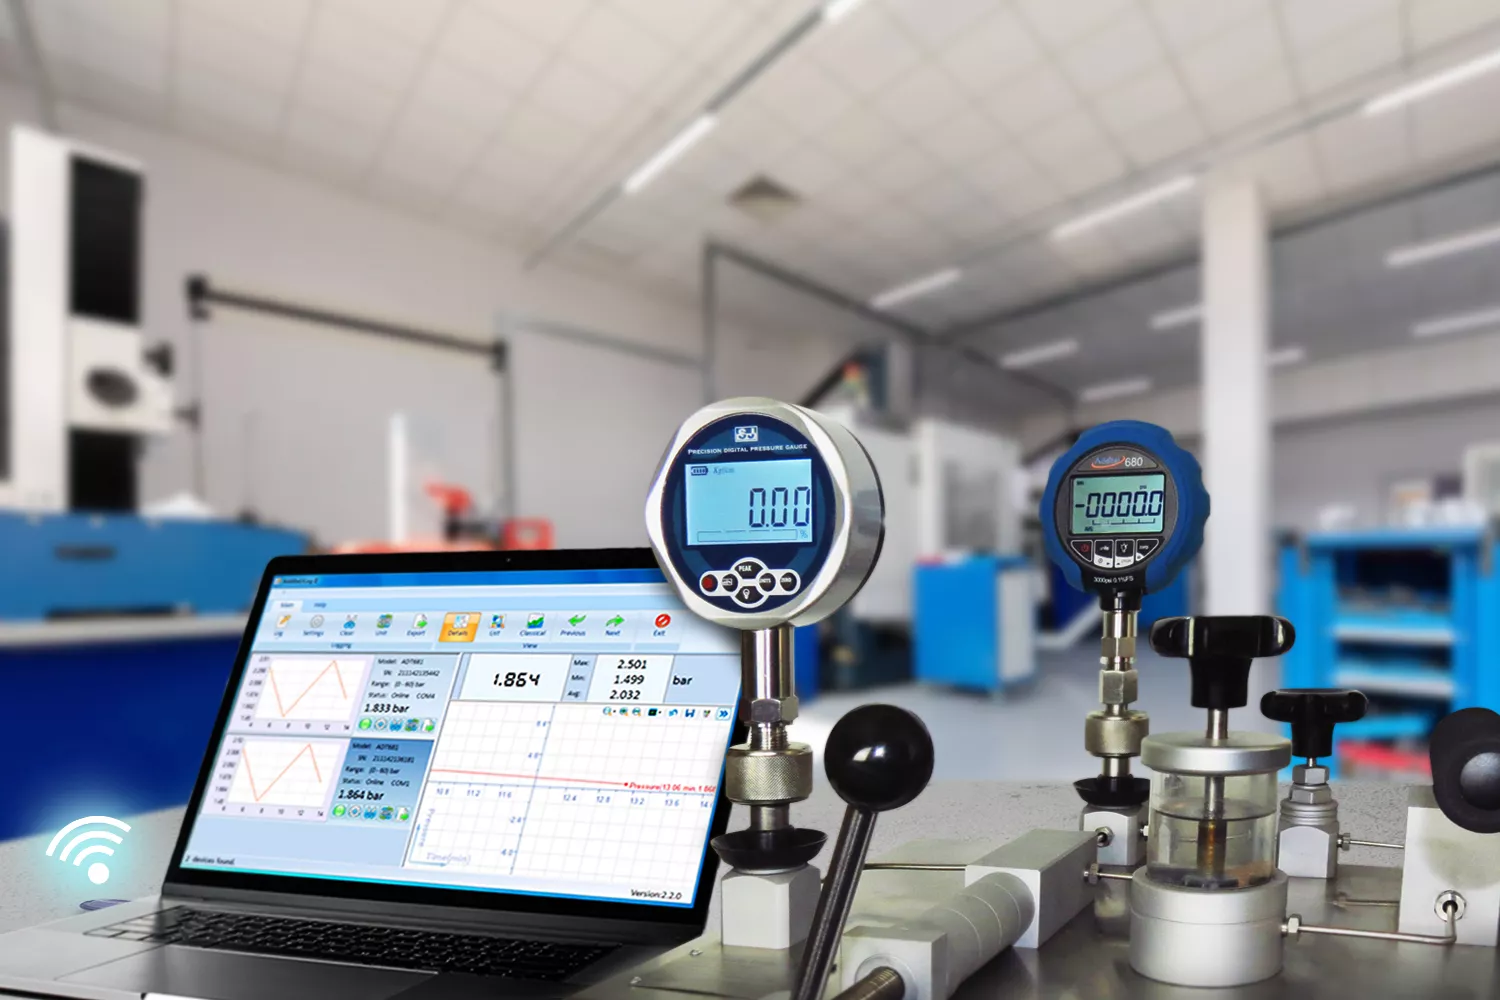 SJ Gauge introduces Additel's ADT680W calibrated digital manometer